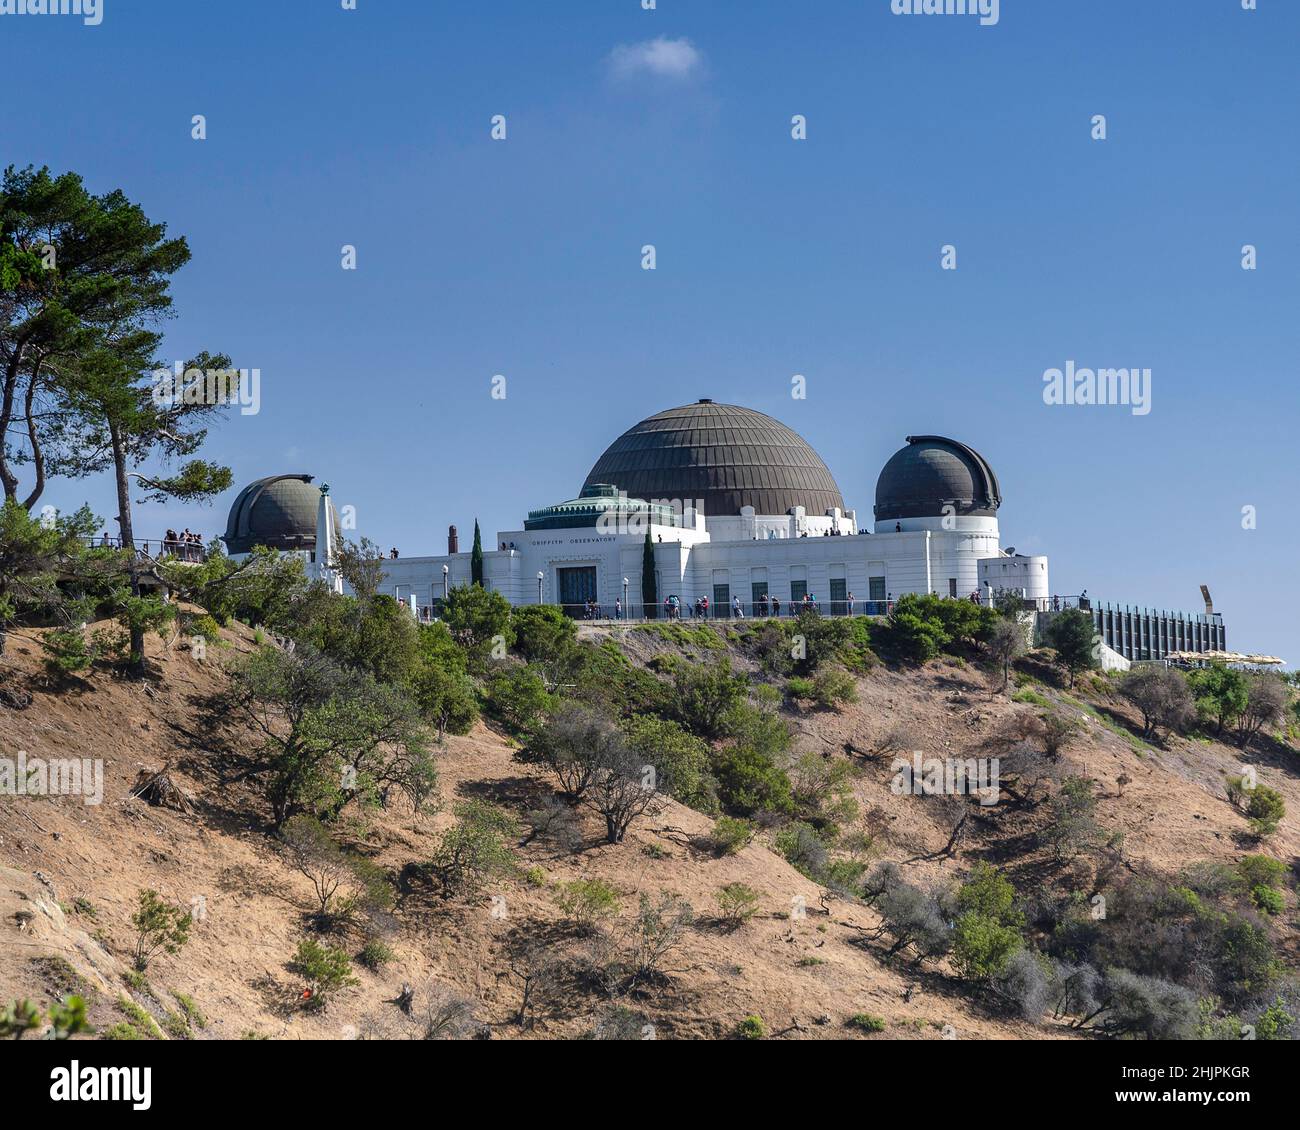 Los Angeles, CA, Stati Uniti d'America - 16 gennaio 2016 : un'ampia facciata del Griffith Observatory Building a Los Angeles, CA. Foto Stock